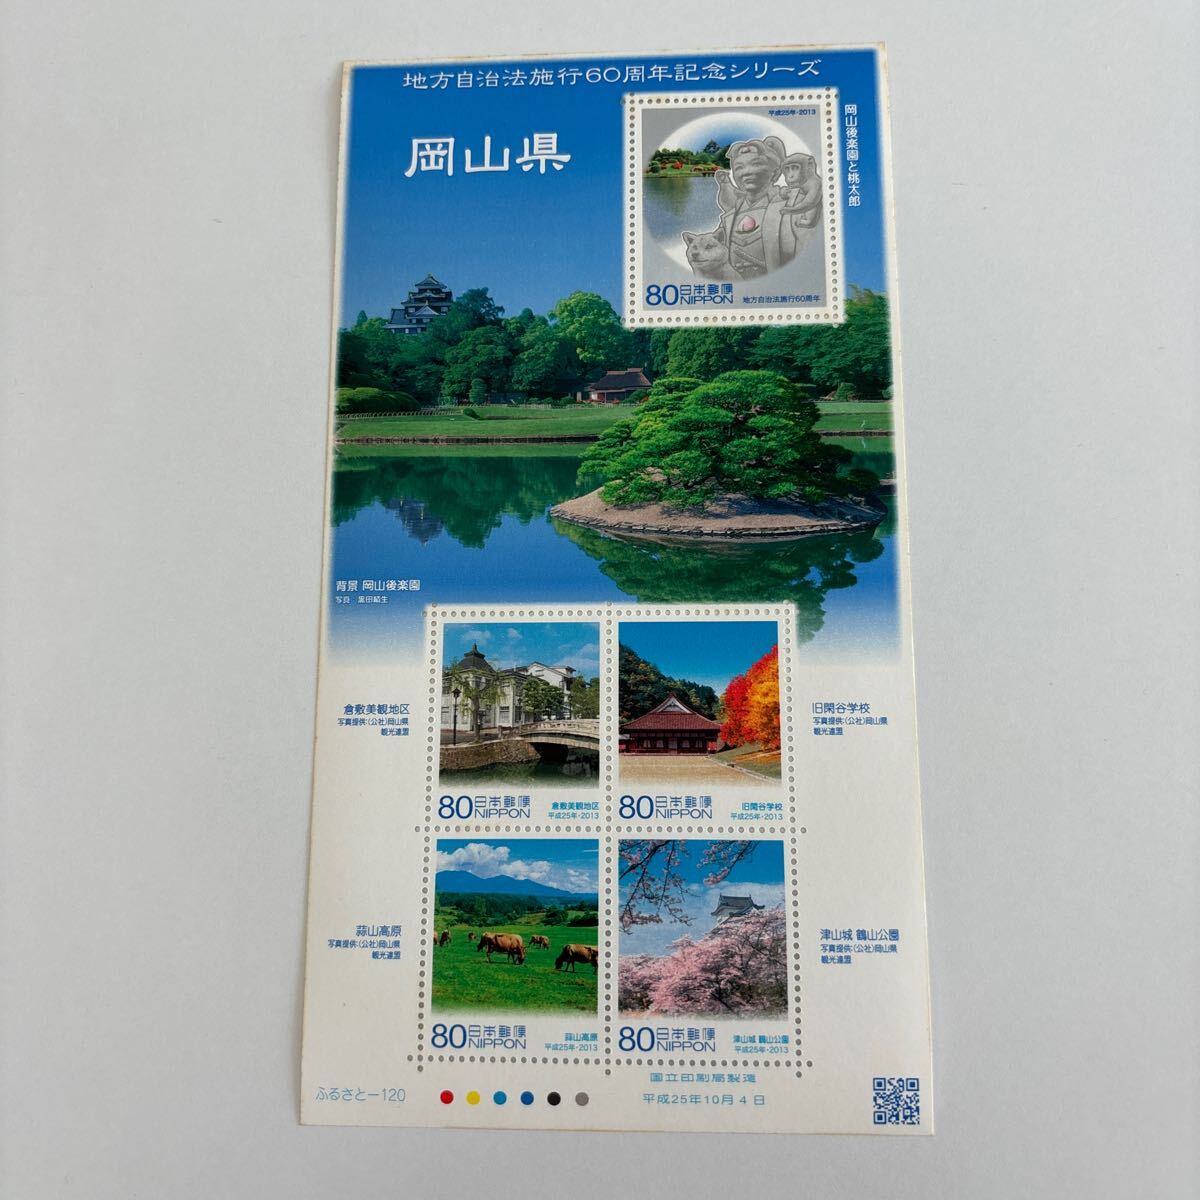 記念切手 地方自治法施行60周年記念シリーズ 岡山県 未使用切手5枚 美品の画像1